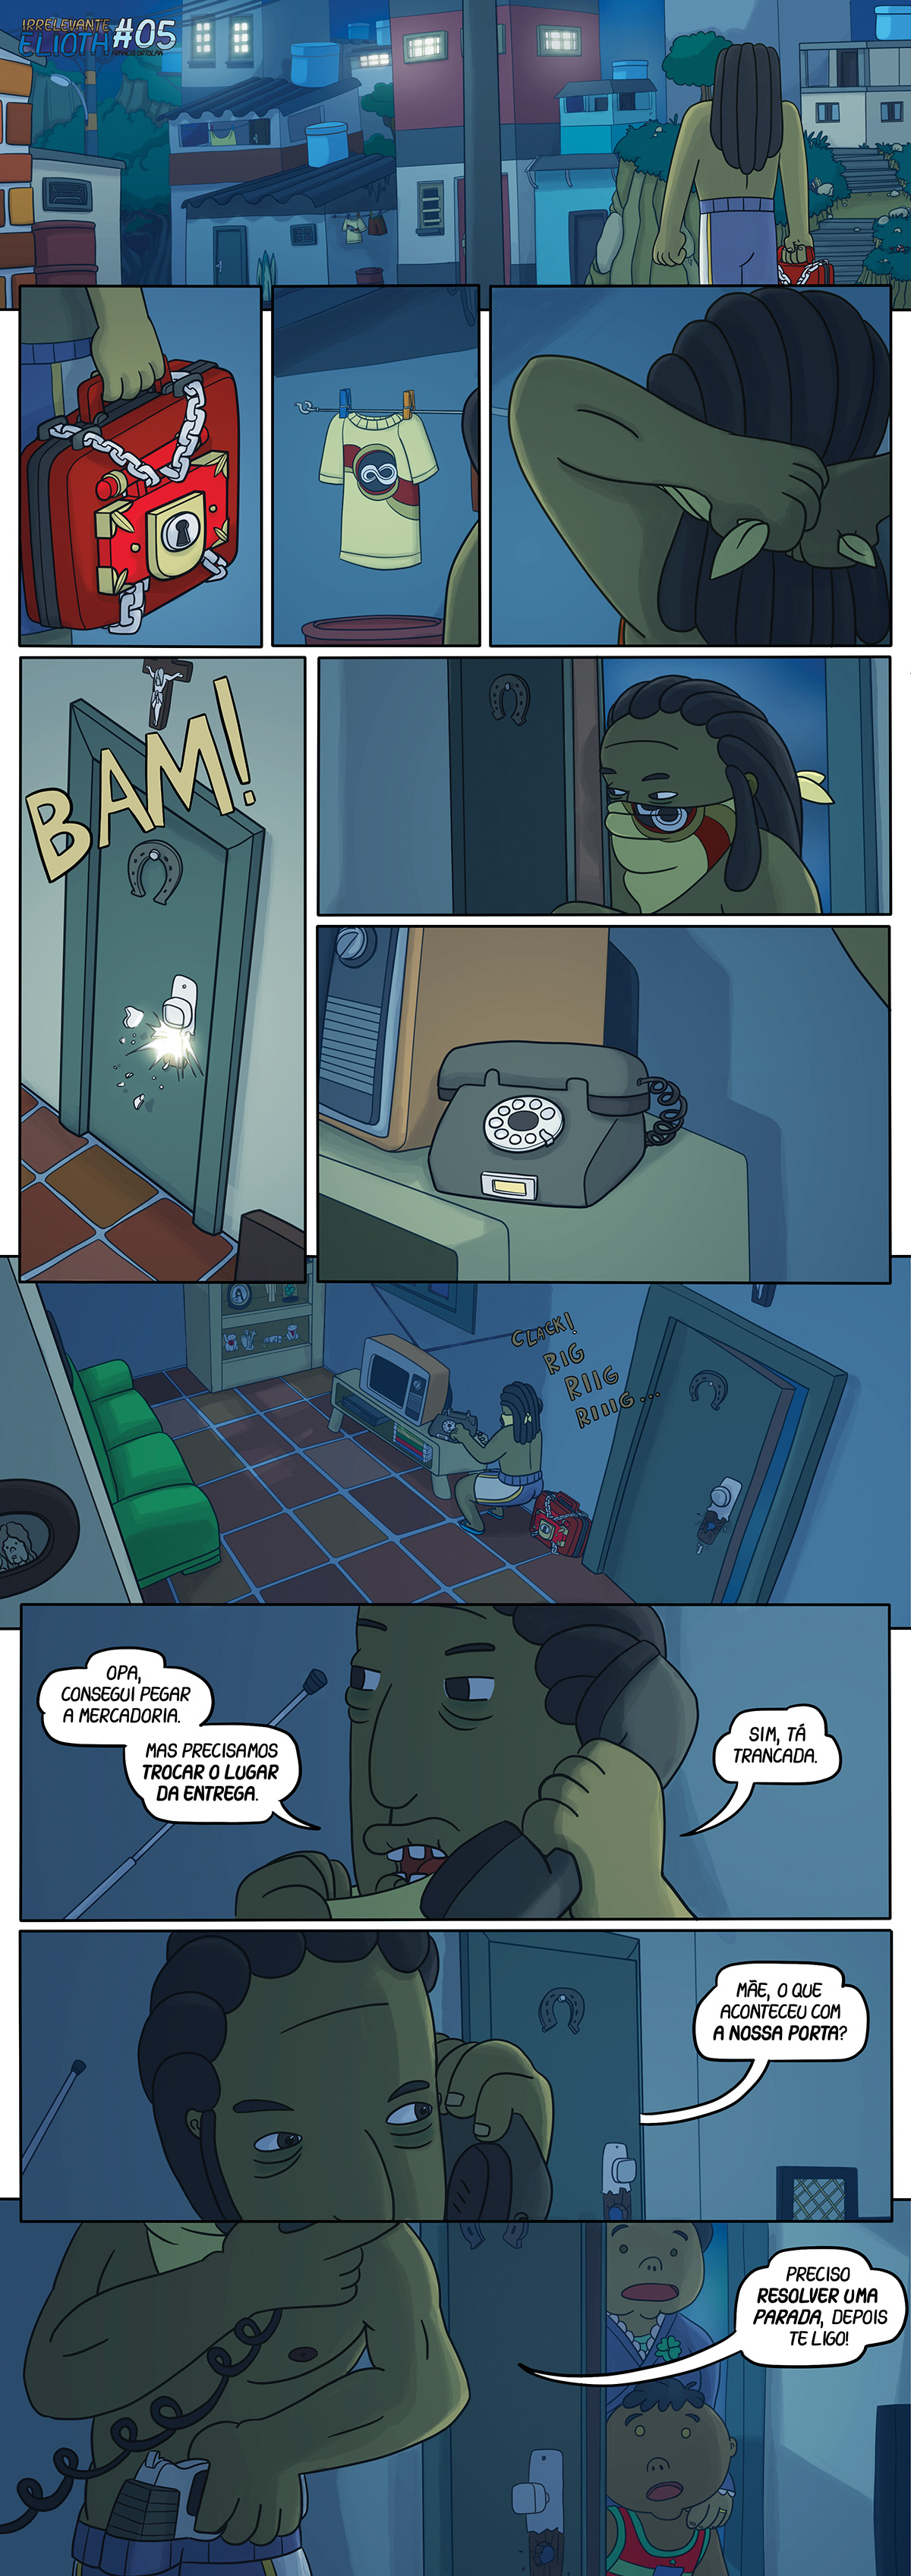 Irrelevante Elioth #05 quadrinhos. O bandido invade uma casa.